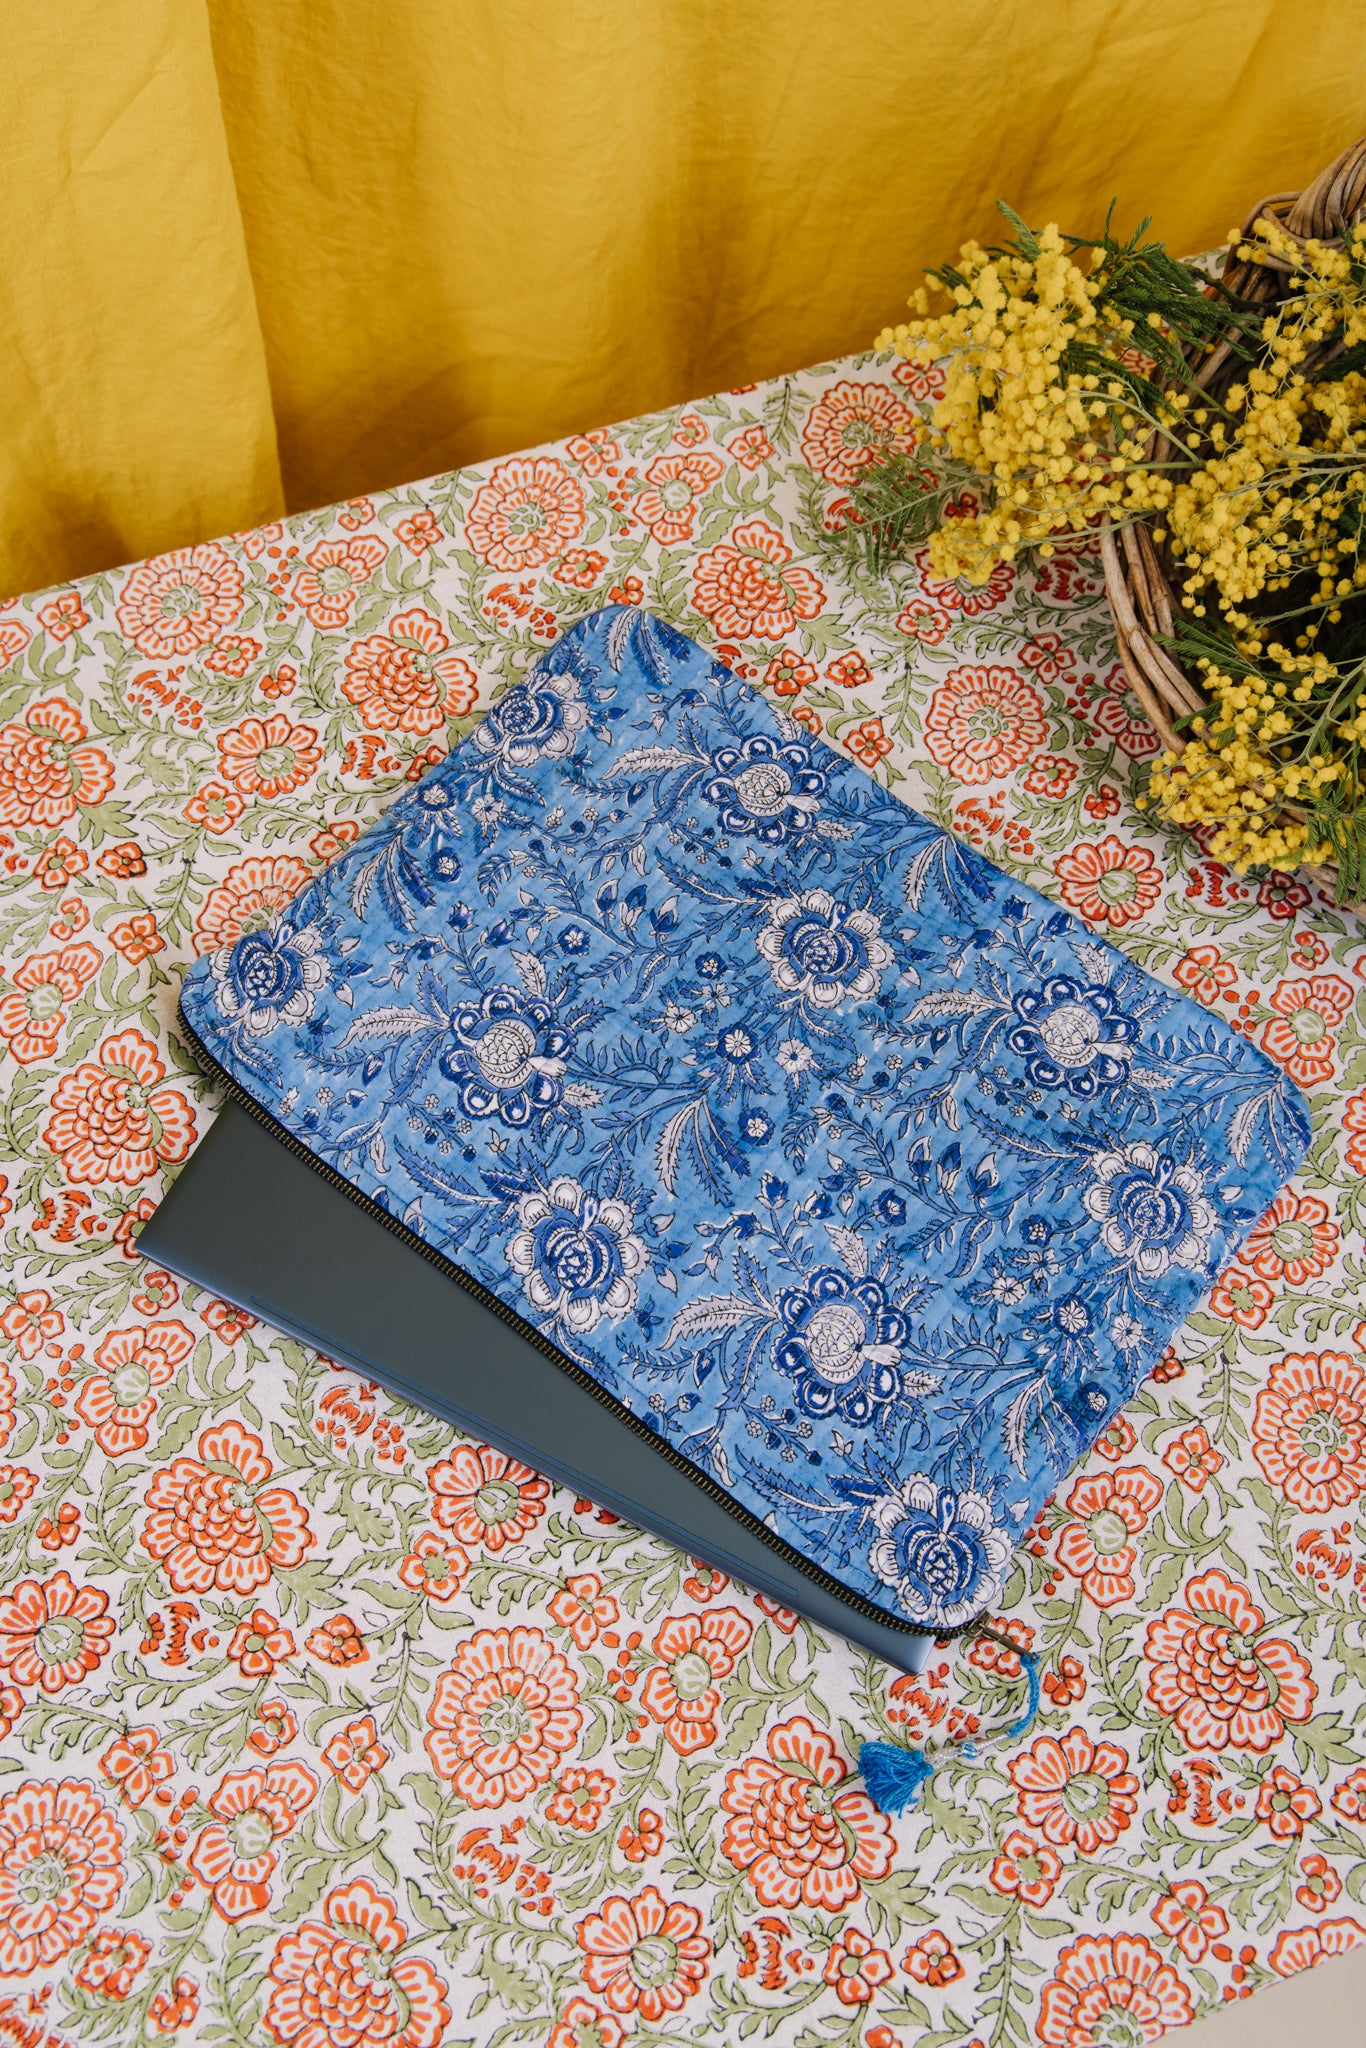 Laptop/iPad Case - Blue Floral